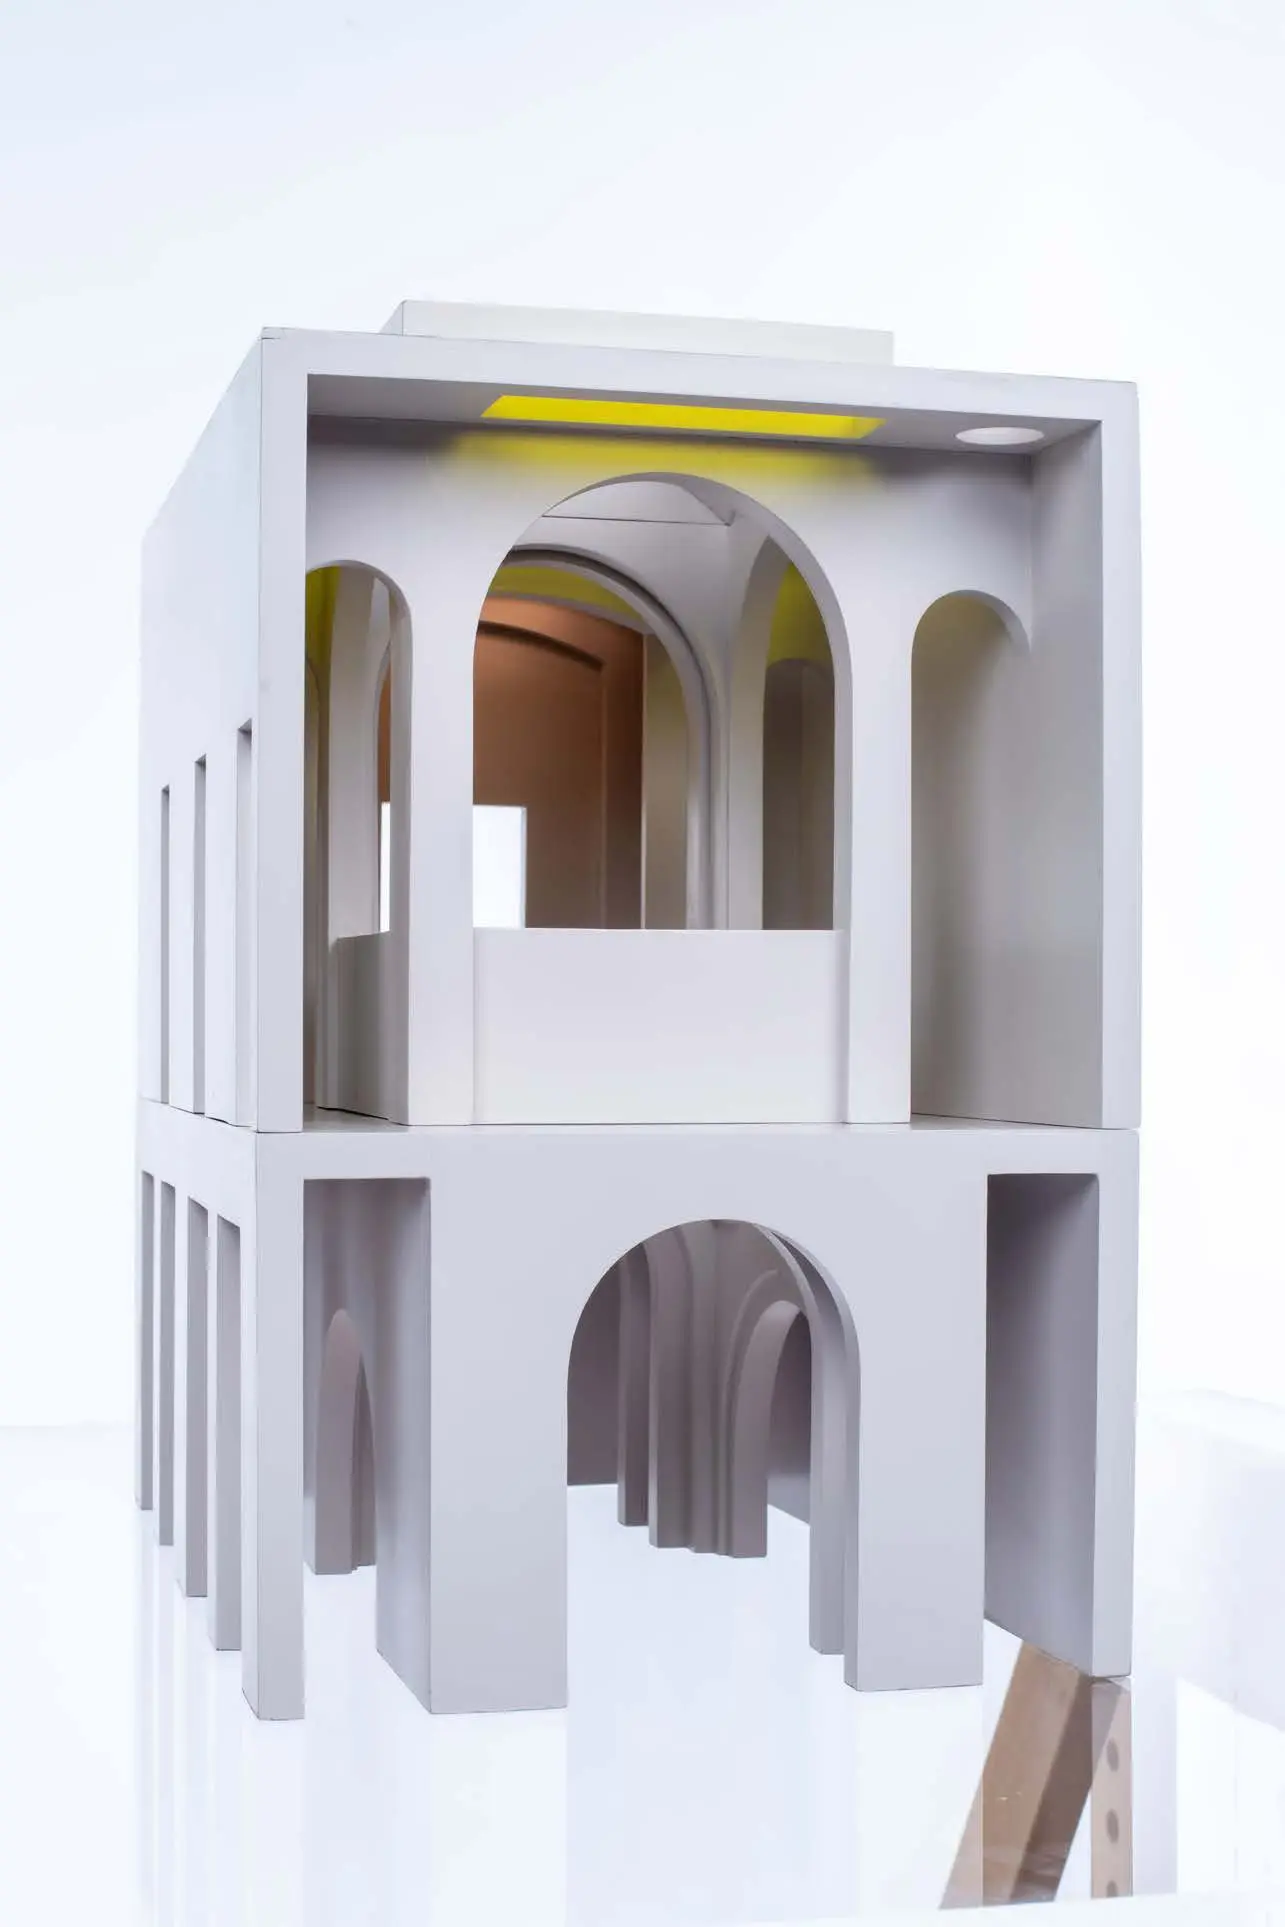 Model of Soane Museum, Mungo Adam-Smith, 2021